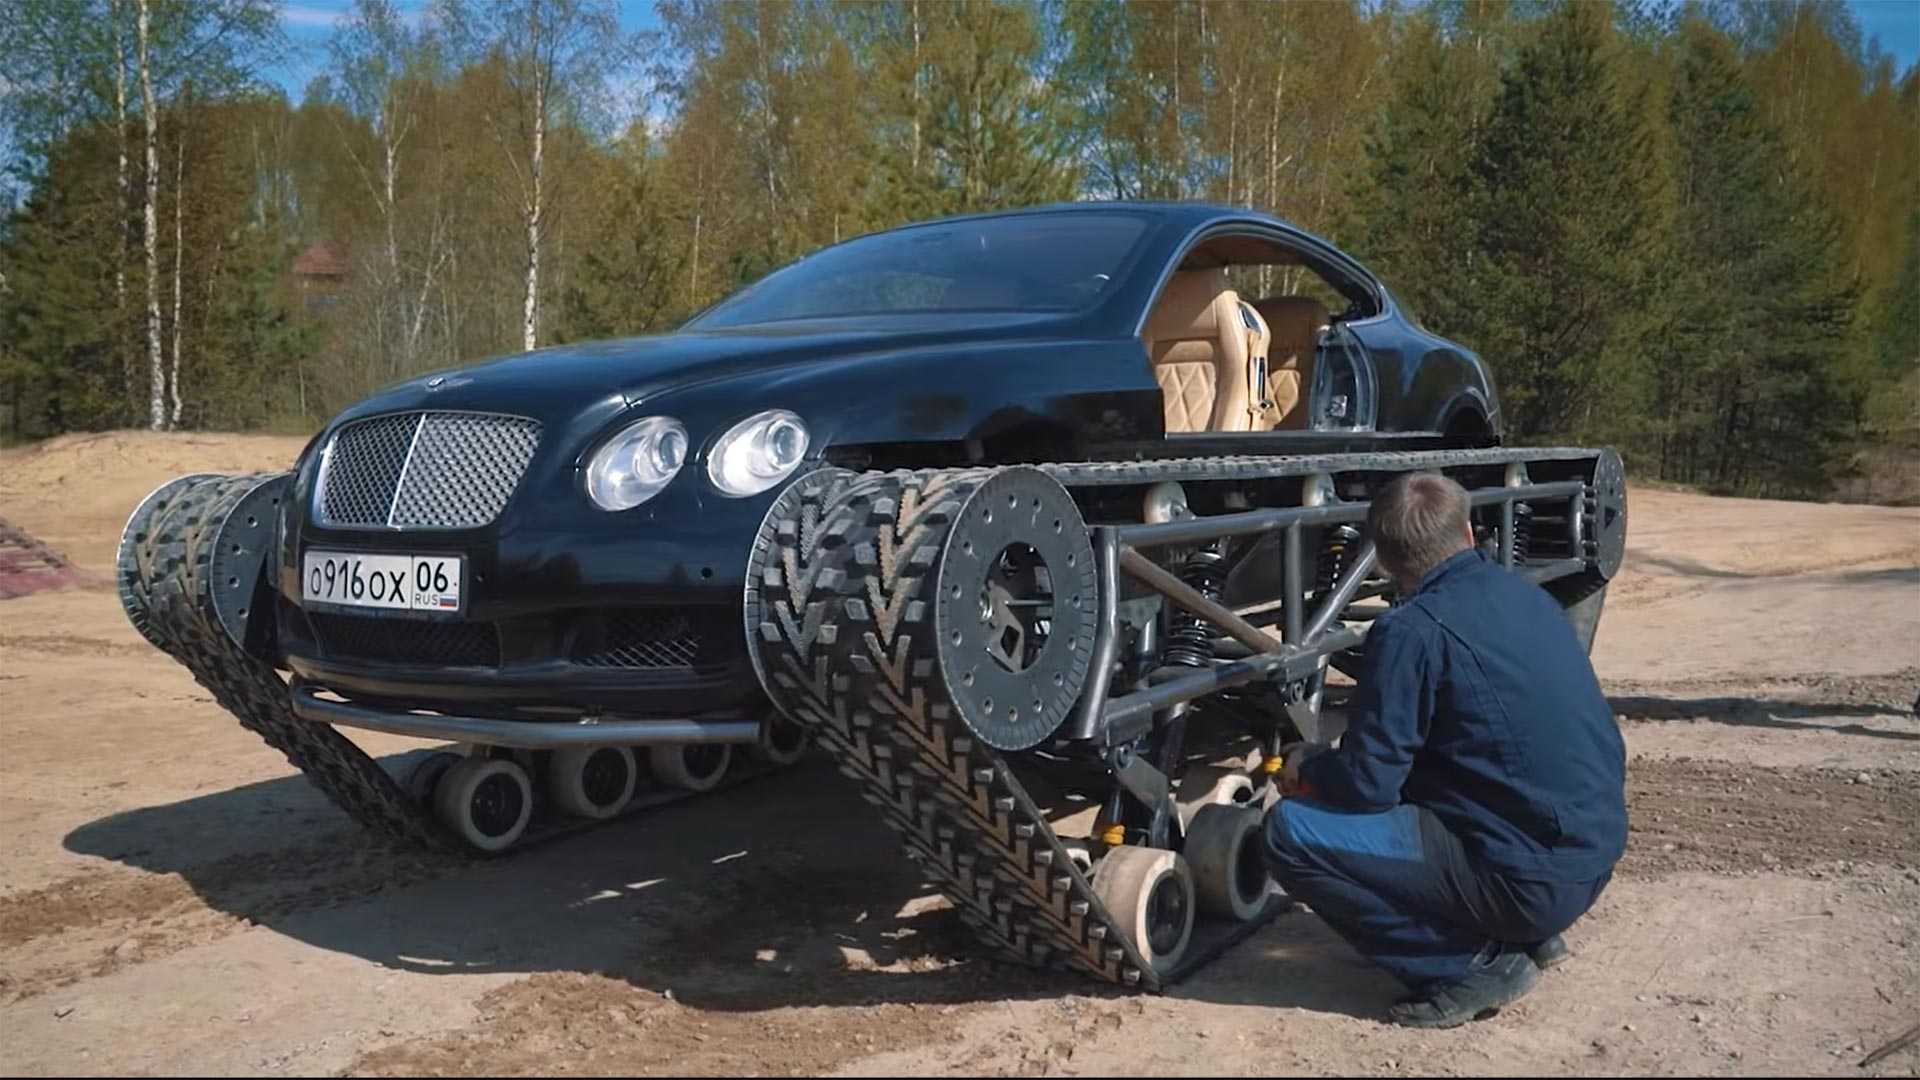 Bentley Ultratank